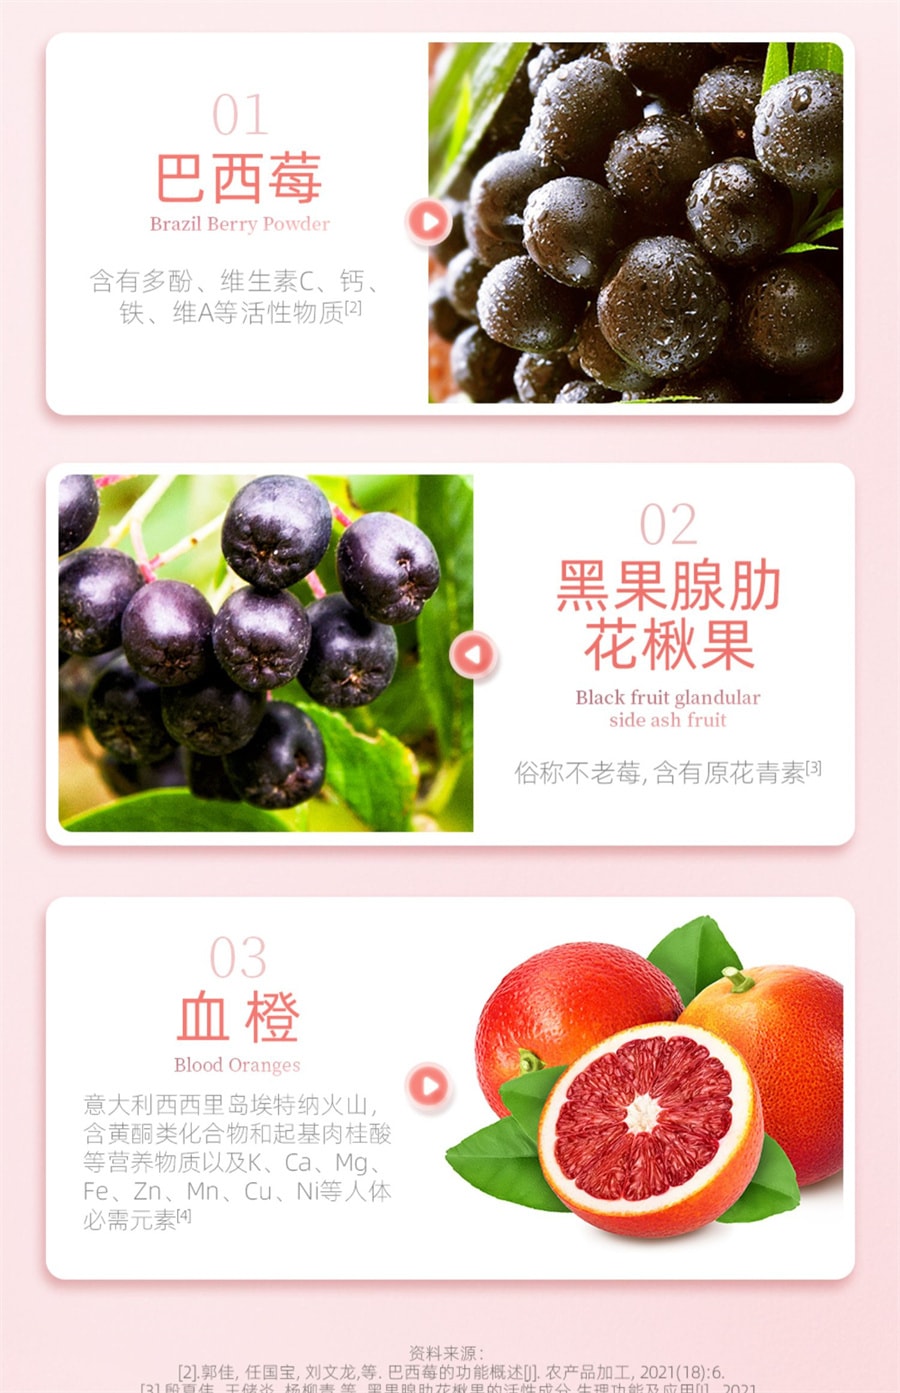 【中國直郵】康恩貝 菸鹼醯胺膠原蛋白勝肽500ml/瓶 正品口服液態巴西莓精華飲料品